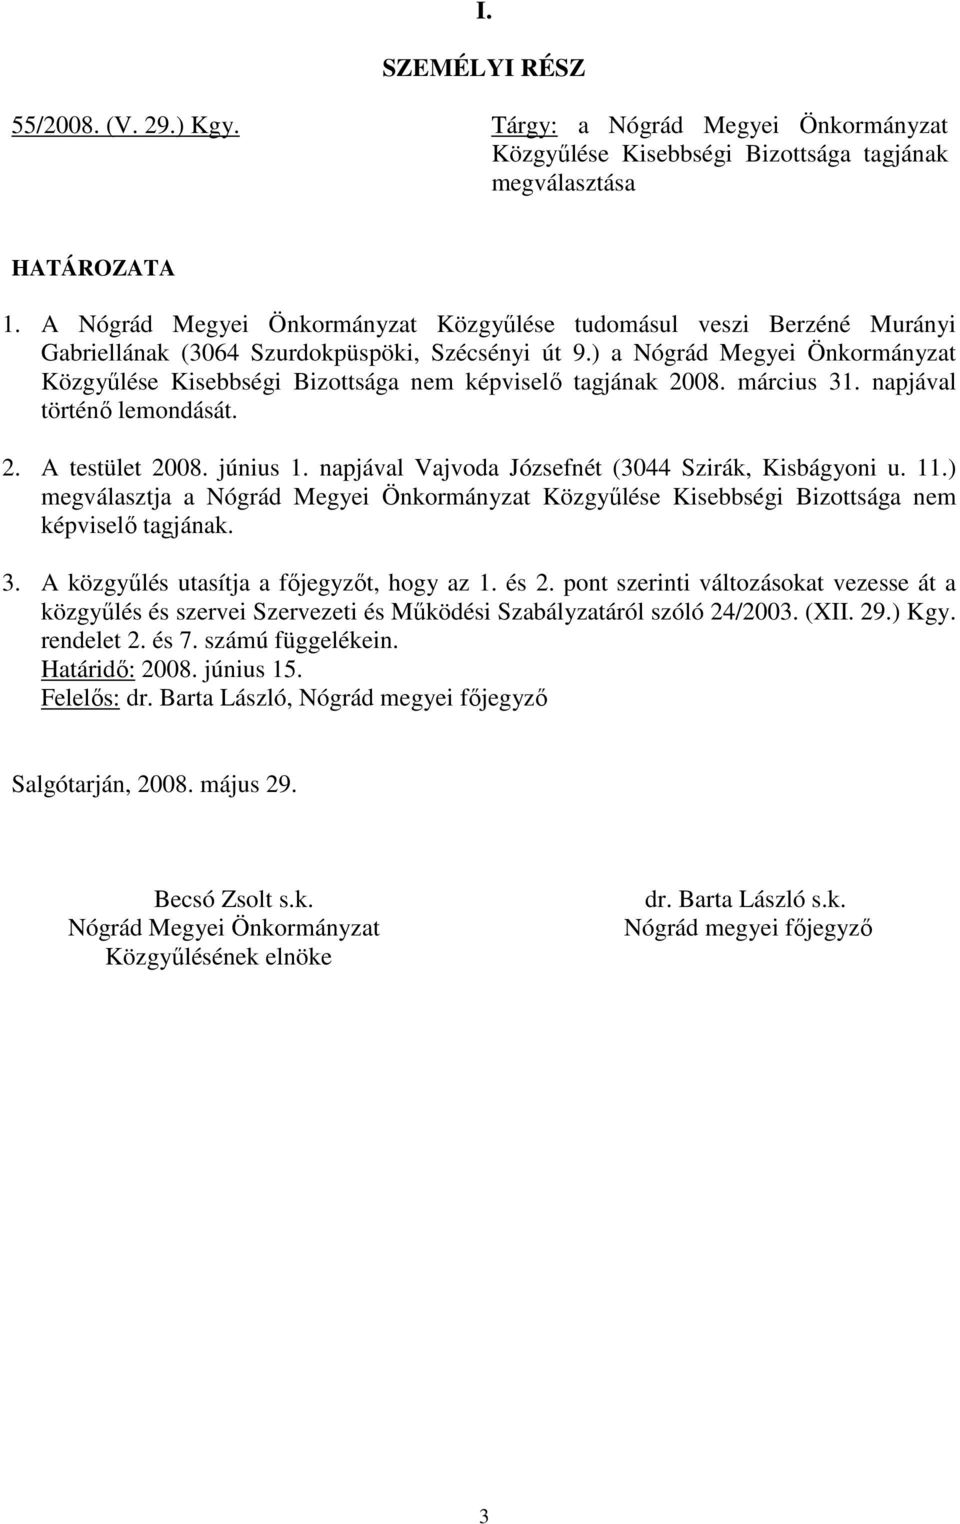 ) a Nógrád Megyei Önkormányzat Közgyőlése Kisebbségi Bizottsága nem képviselı tagjának 2008. március 31. napjával történı lemondását. 2. A testület 2008. június 1.